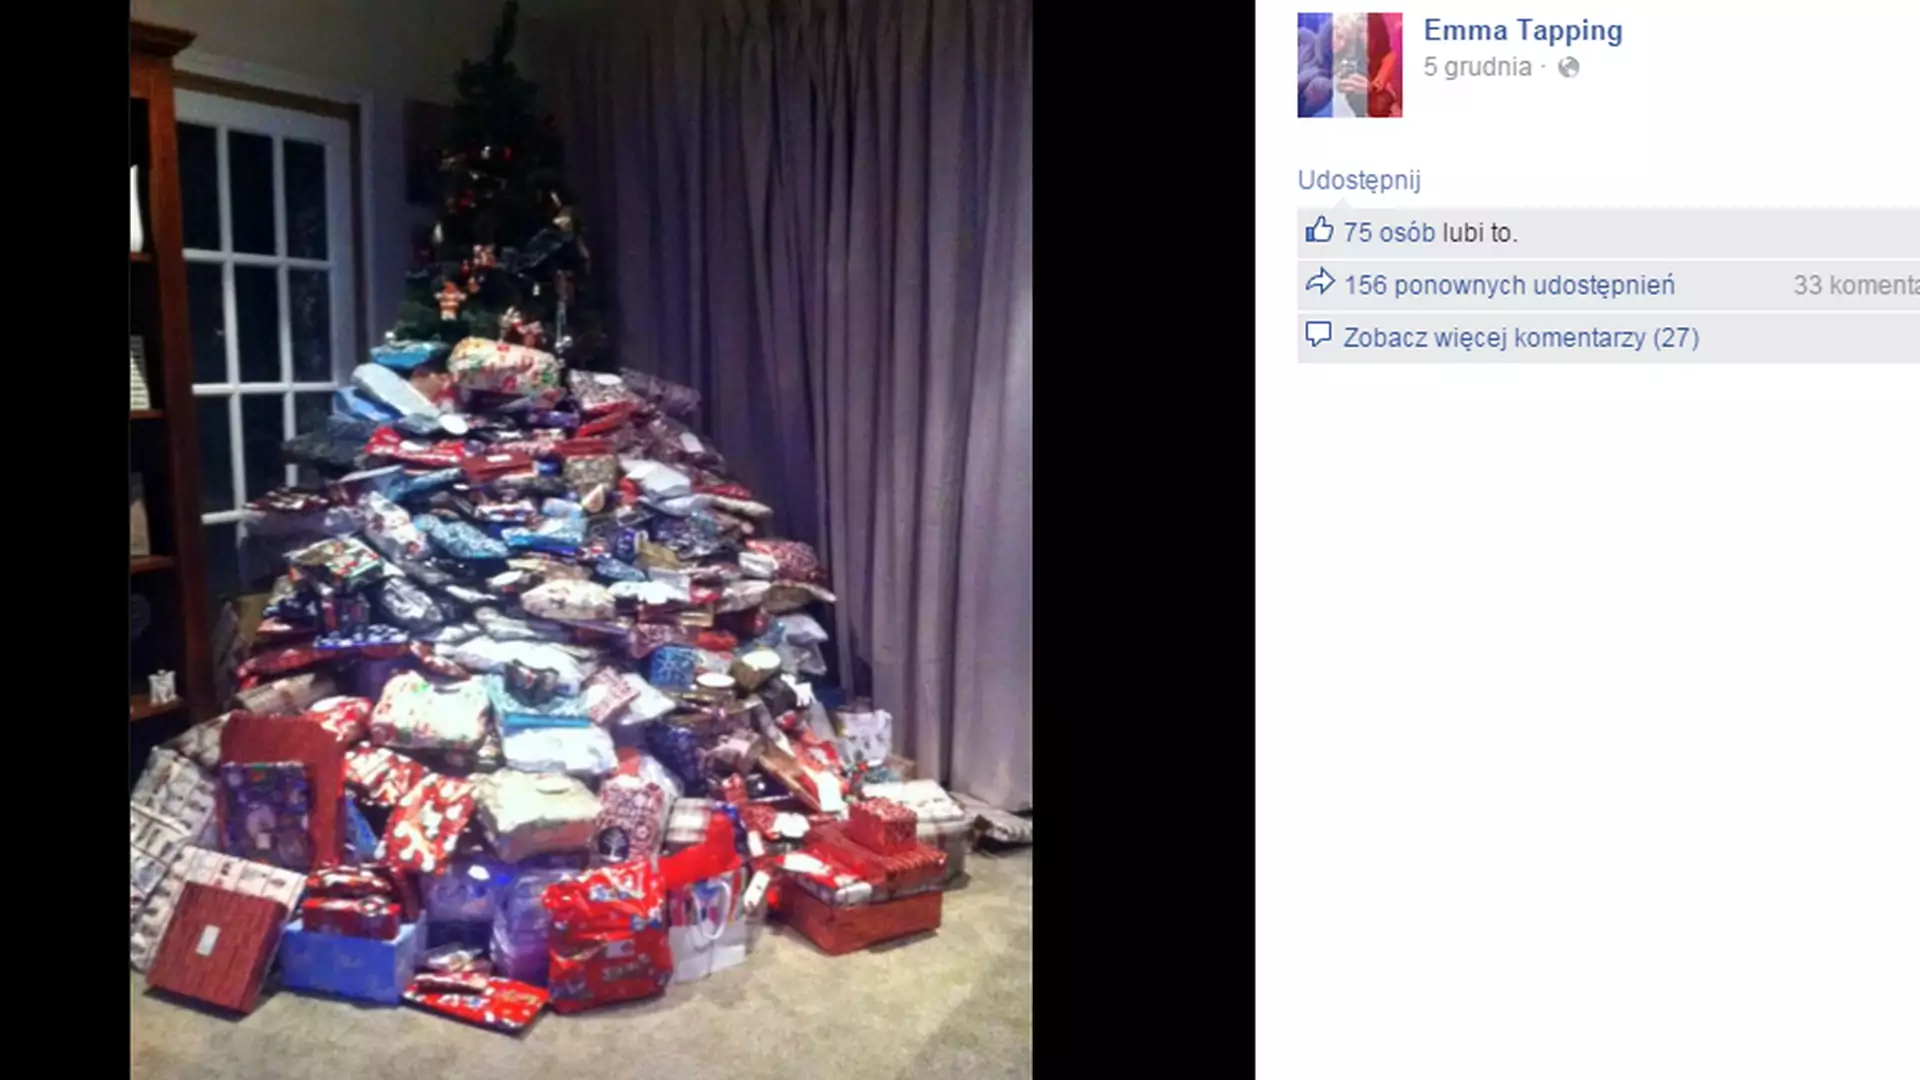 Kupiła dzieciom 300 prezentów pod choinkę. Teraz tłumaczy się internautom, którzy posądzili ją o ich rozpieszczanie